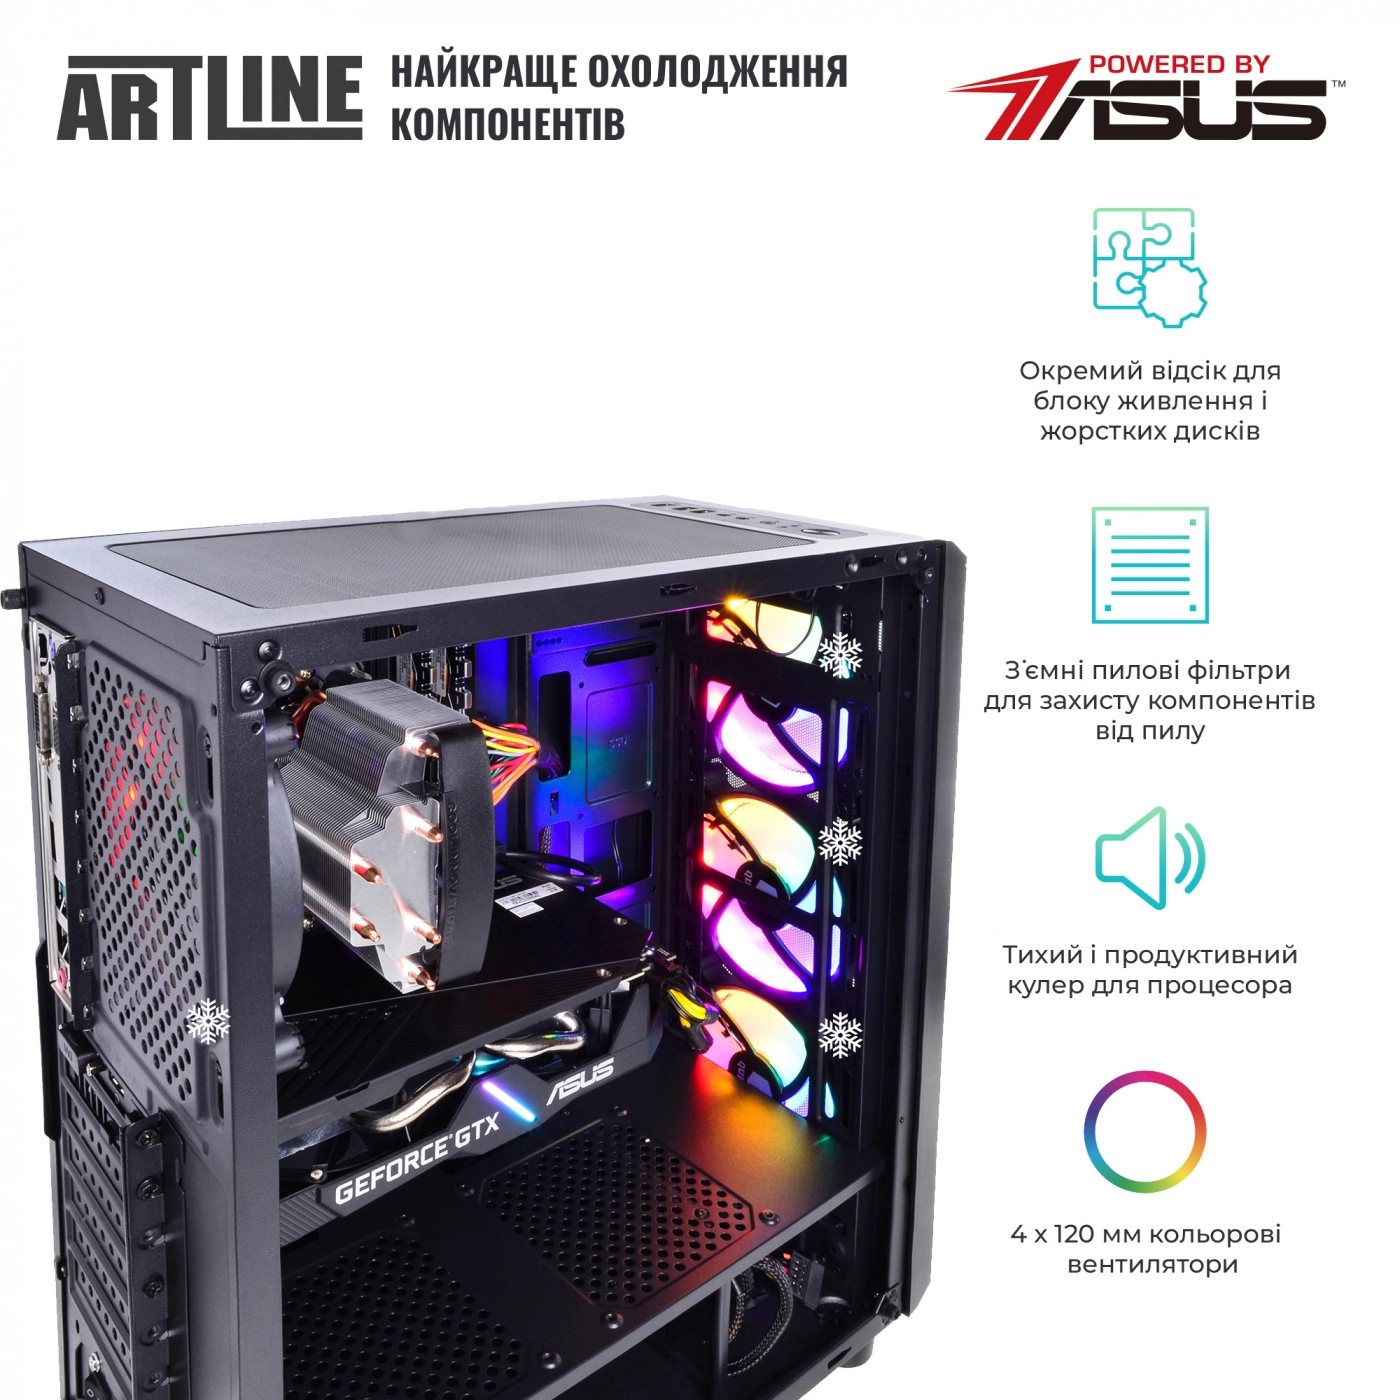 Купить Компьютер ARTLINE Gaming X39v61 - фото 3